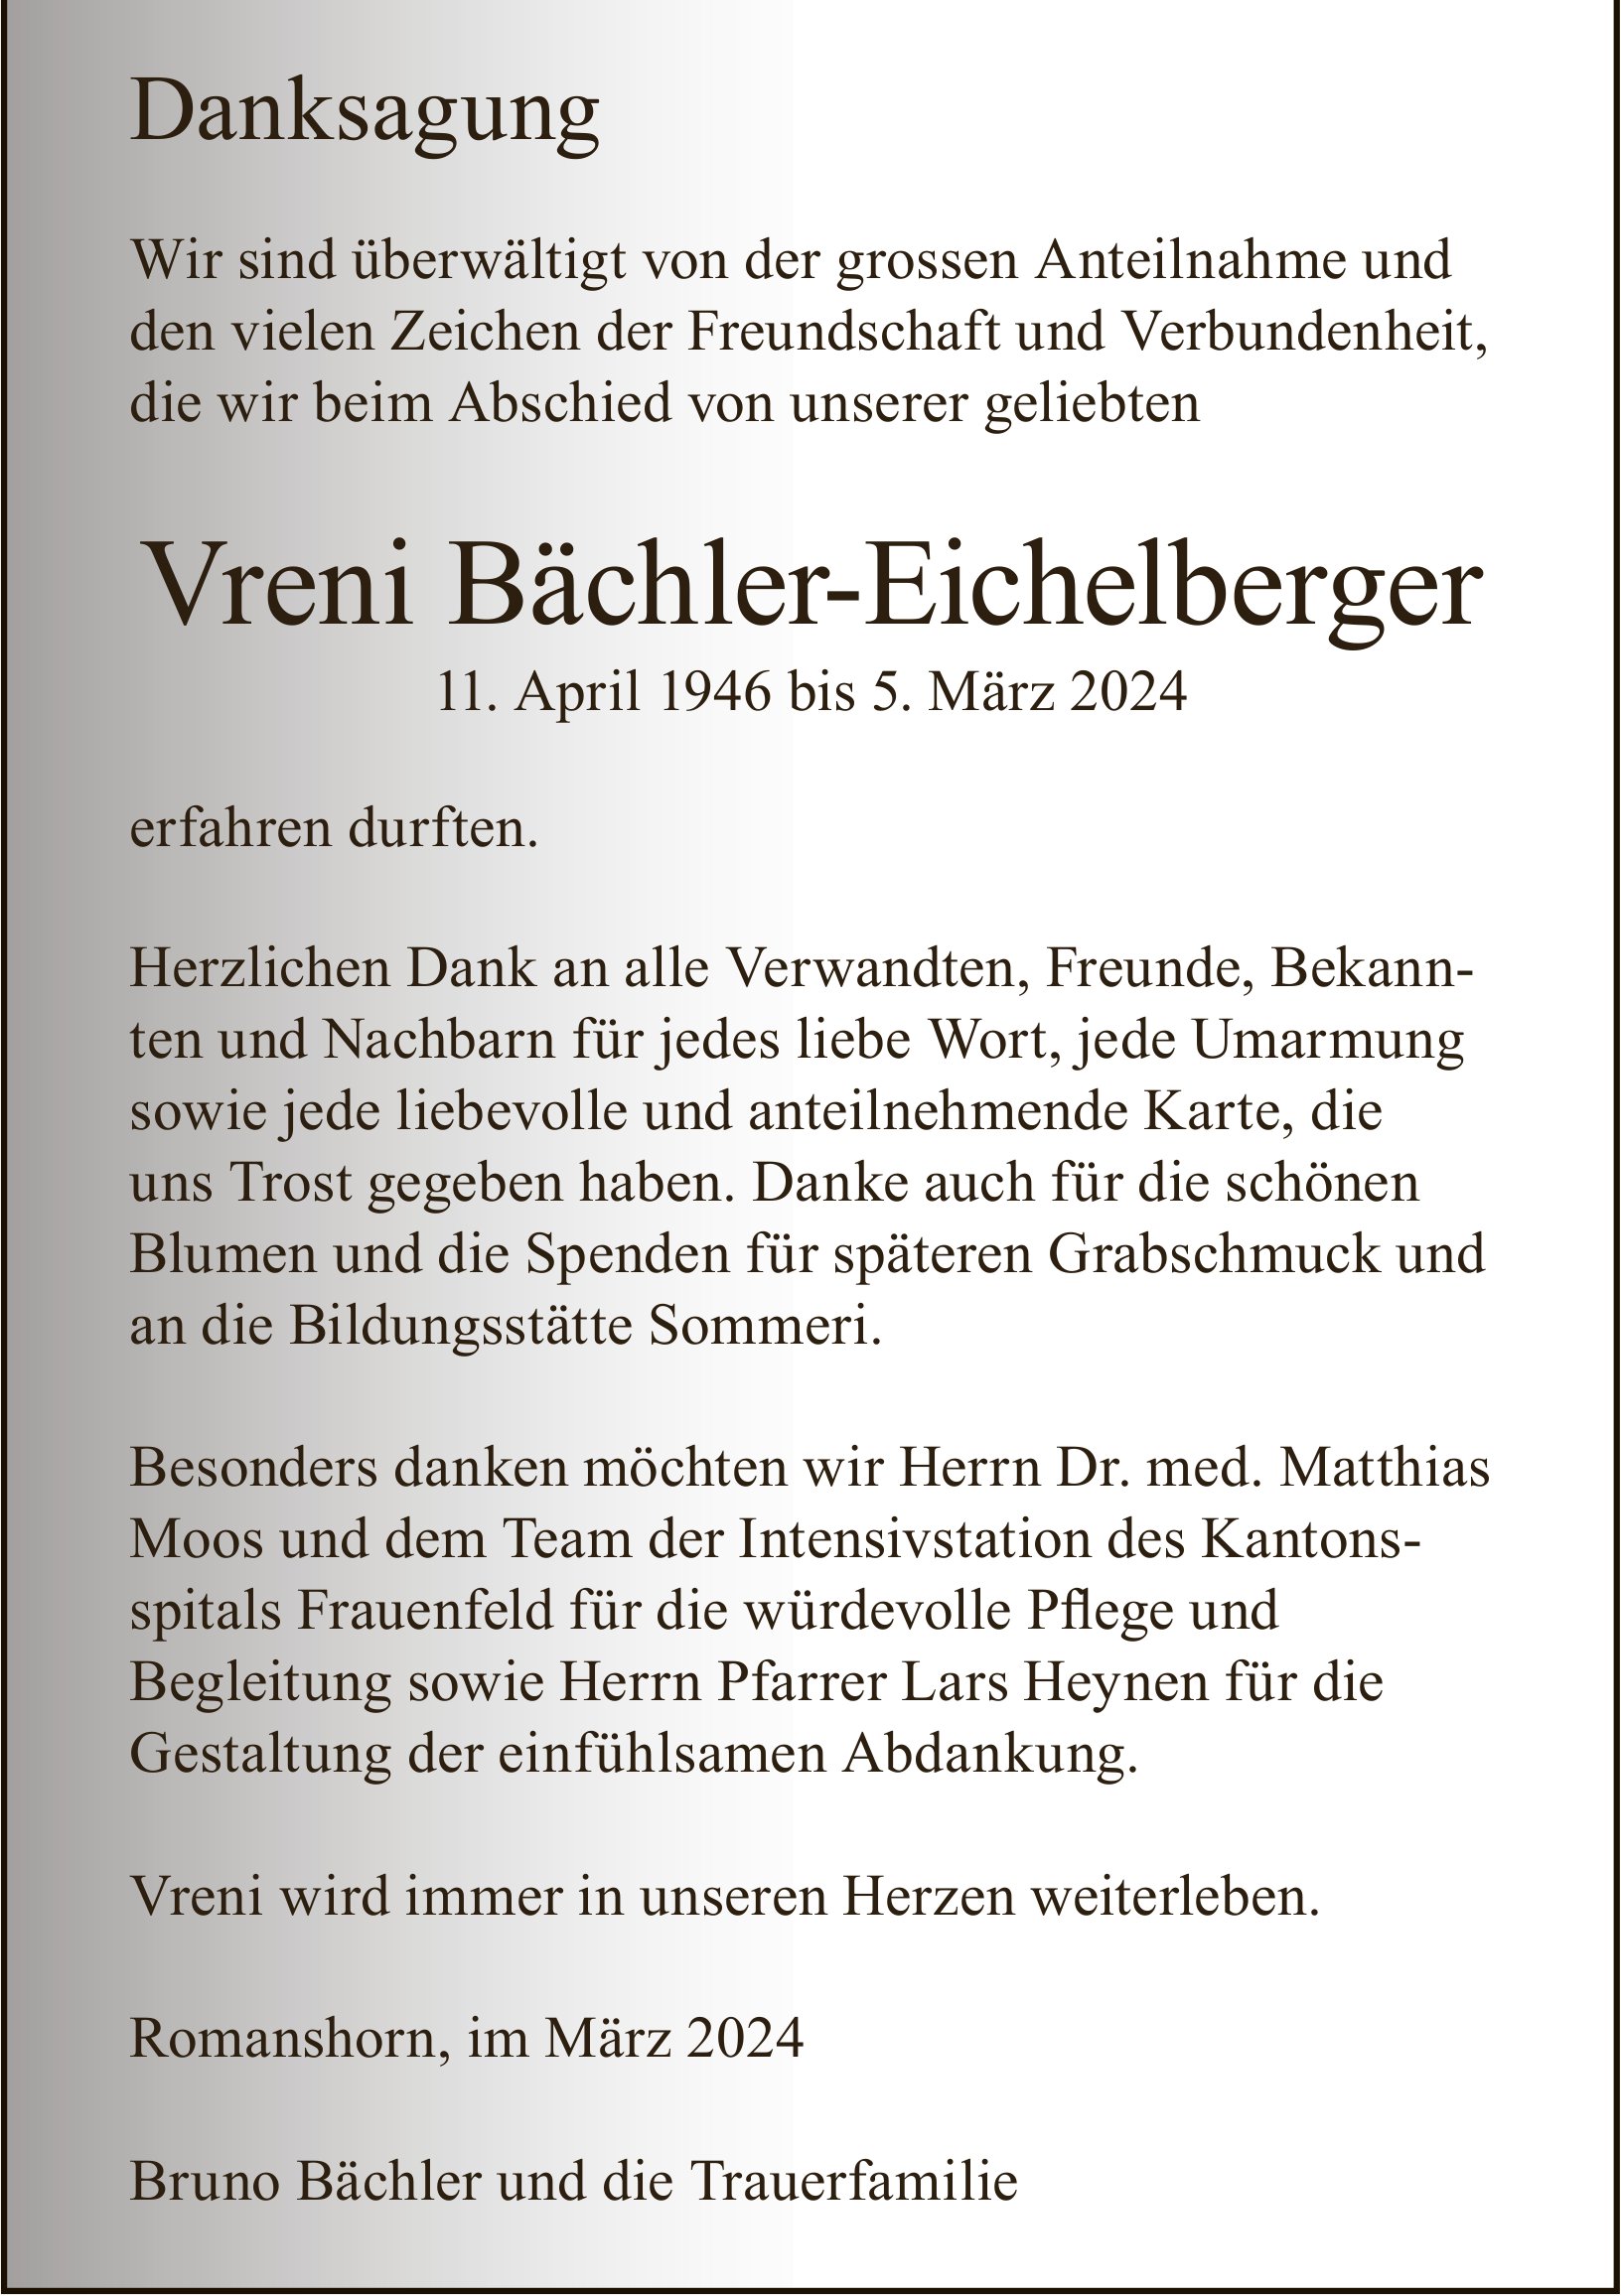 Bächler-Eichelberger Vreni, im März 2024 / DS